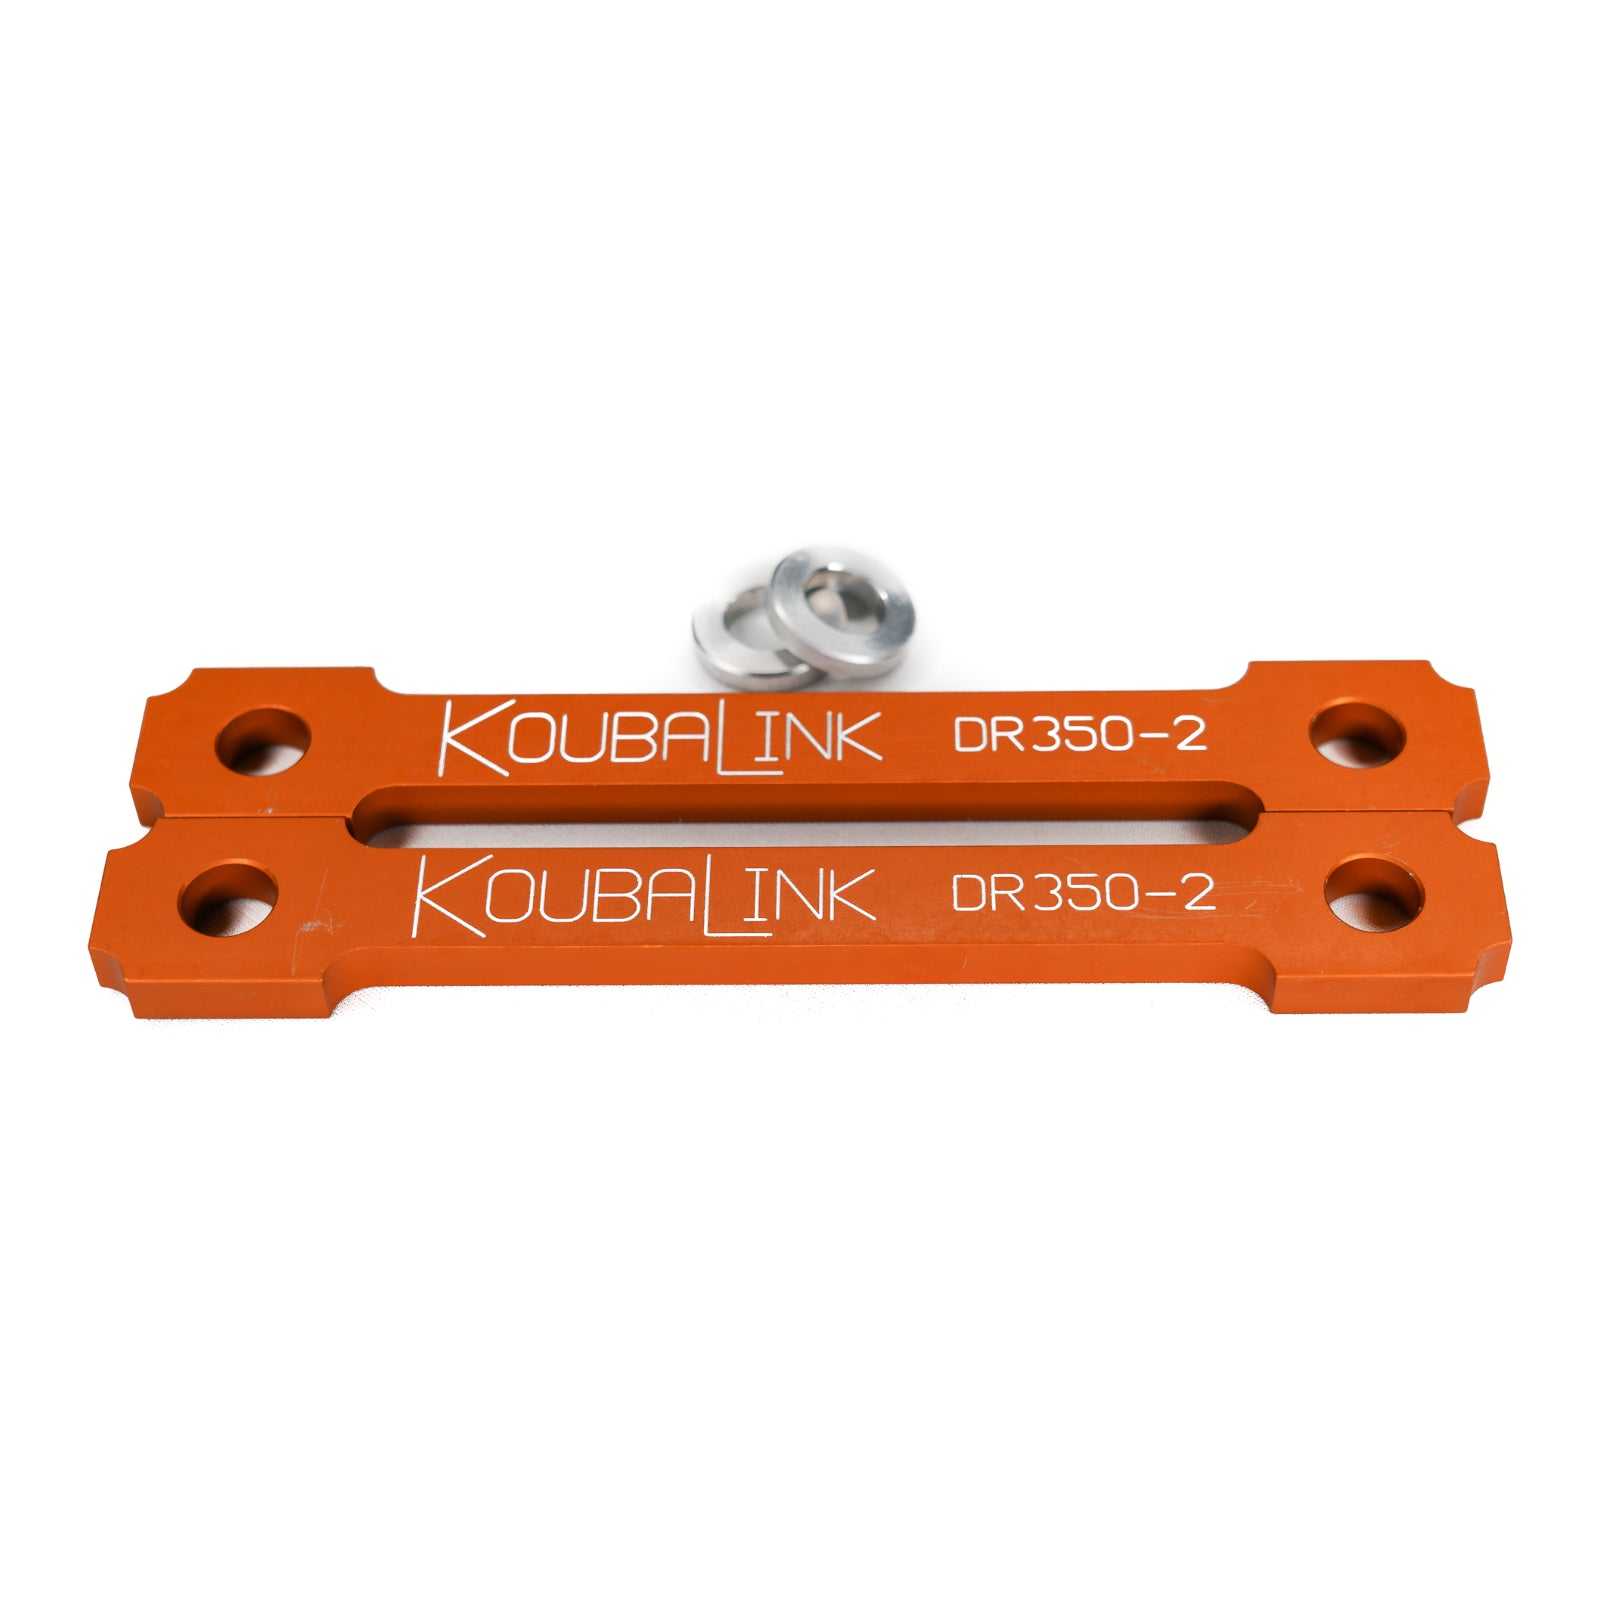 KoubaLink, Koubalink 44 mm Tieferlegungsgestänge DR350-2 – Orange